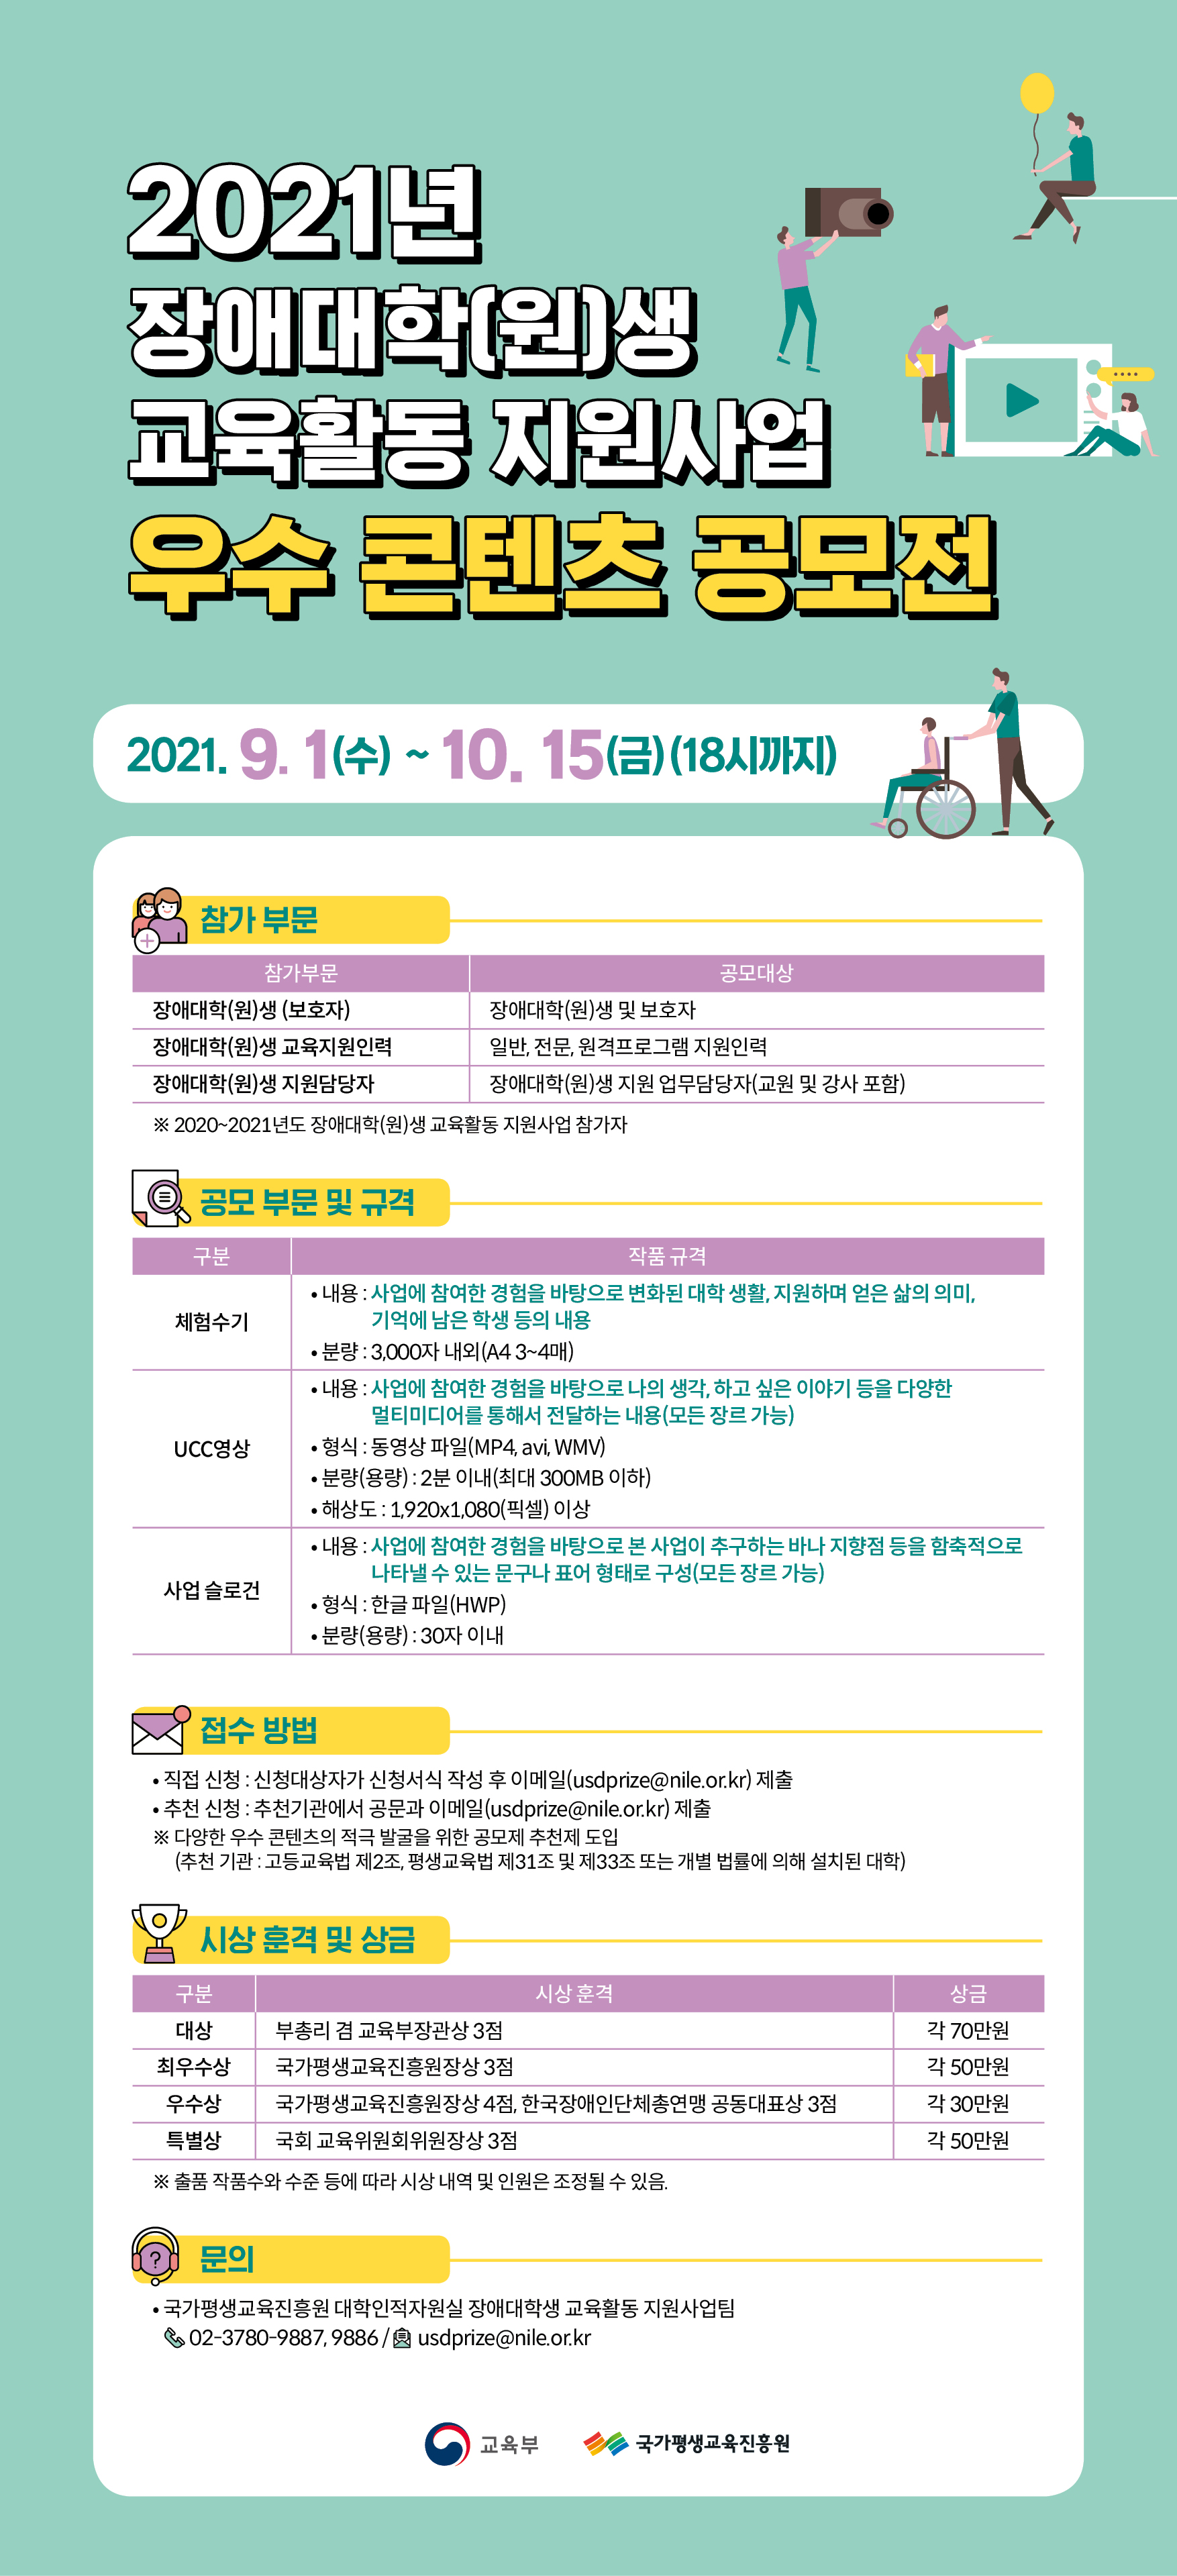 장애대학(원)생 교육활동 지원사업 포스터 - 동일 내용 게시글 안에 있음